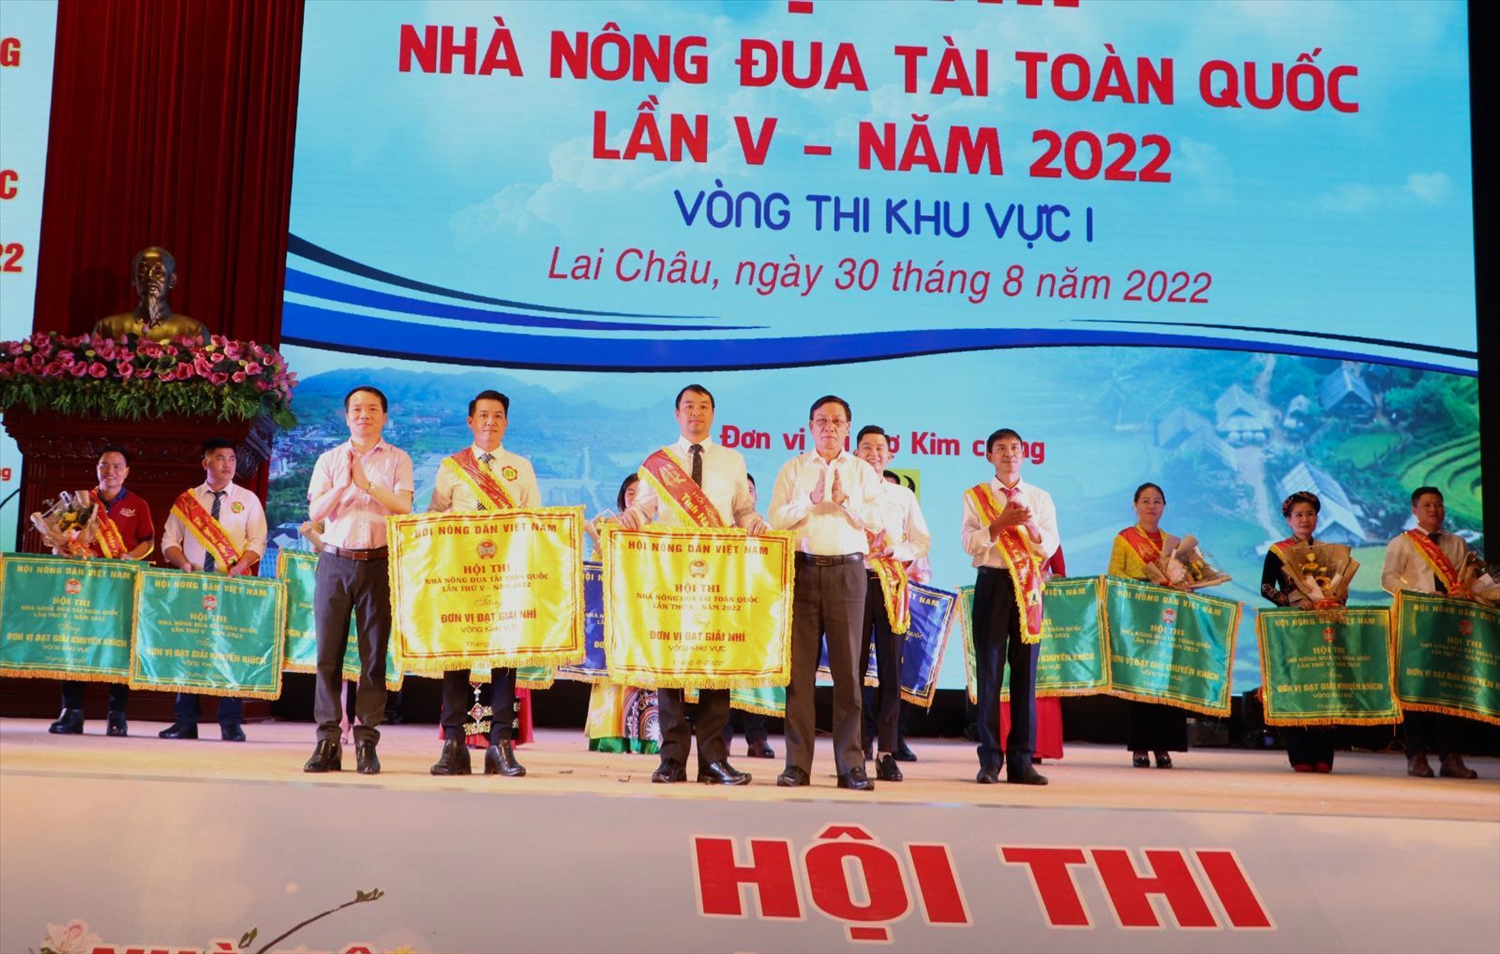 Giải Nhì của Hội thi Nhà nông đua tài toàn quốc lần thứ V- năm 2022, Khu vực I thuộc về tỉnh Hà Giang và Bắc Giang